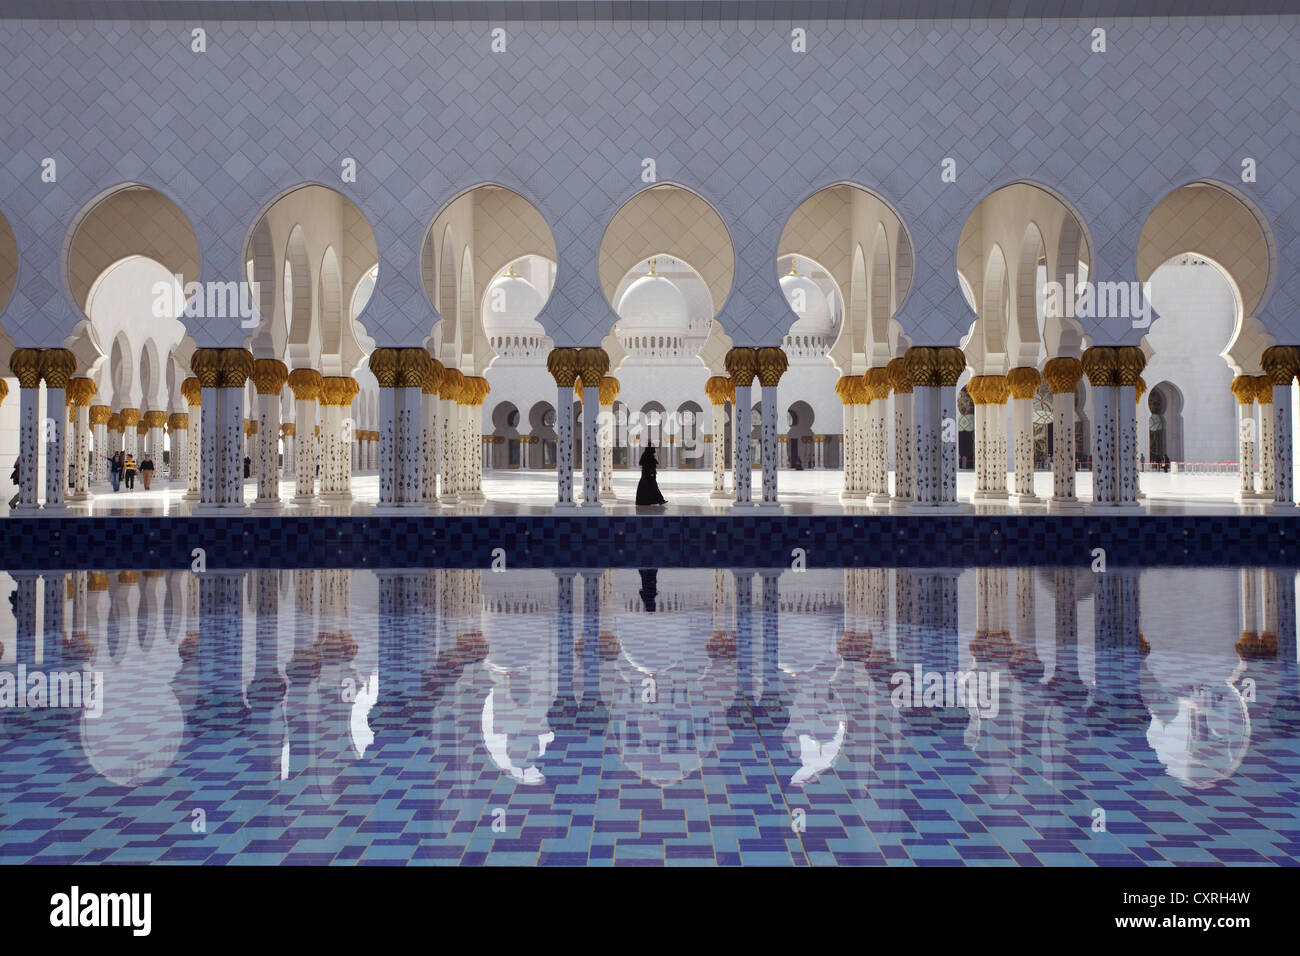 Colonnato si riflette in una piscina di acqua nella Moschea Sheikh Zayed di Abu Dhabi, Emirati Arabi Uniti, Medio Oriente e Asia Foto Stock